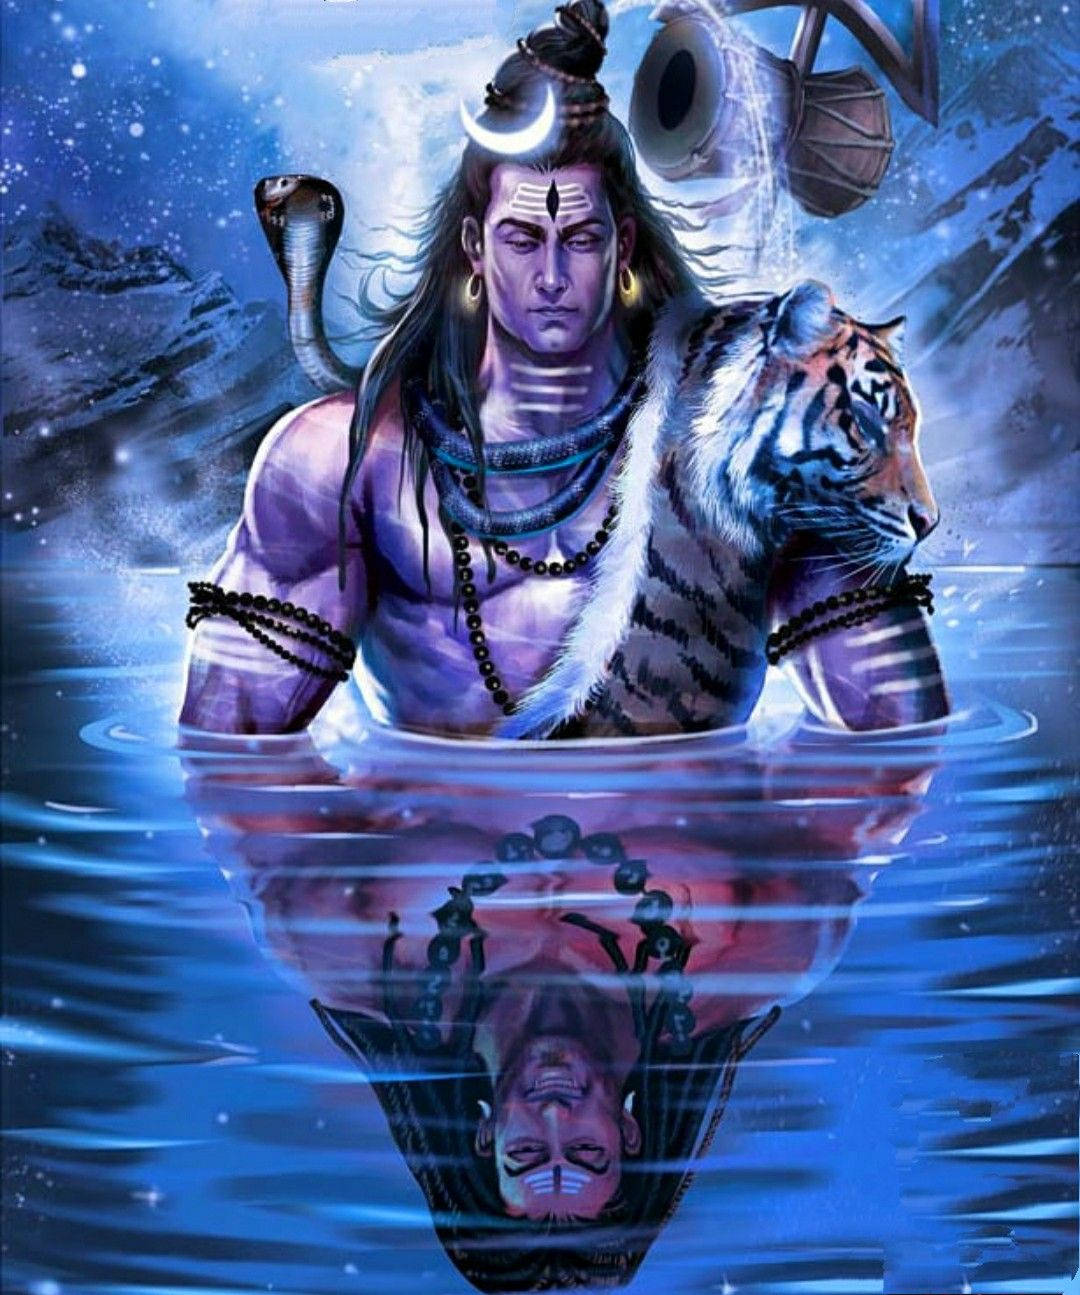 Cartoon Shiva: Unleashing the Power of the Hero